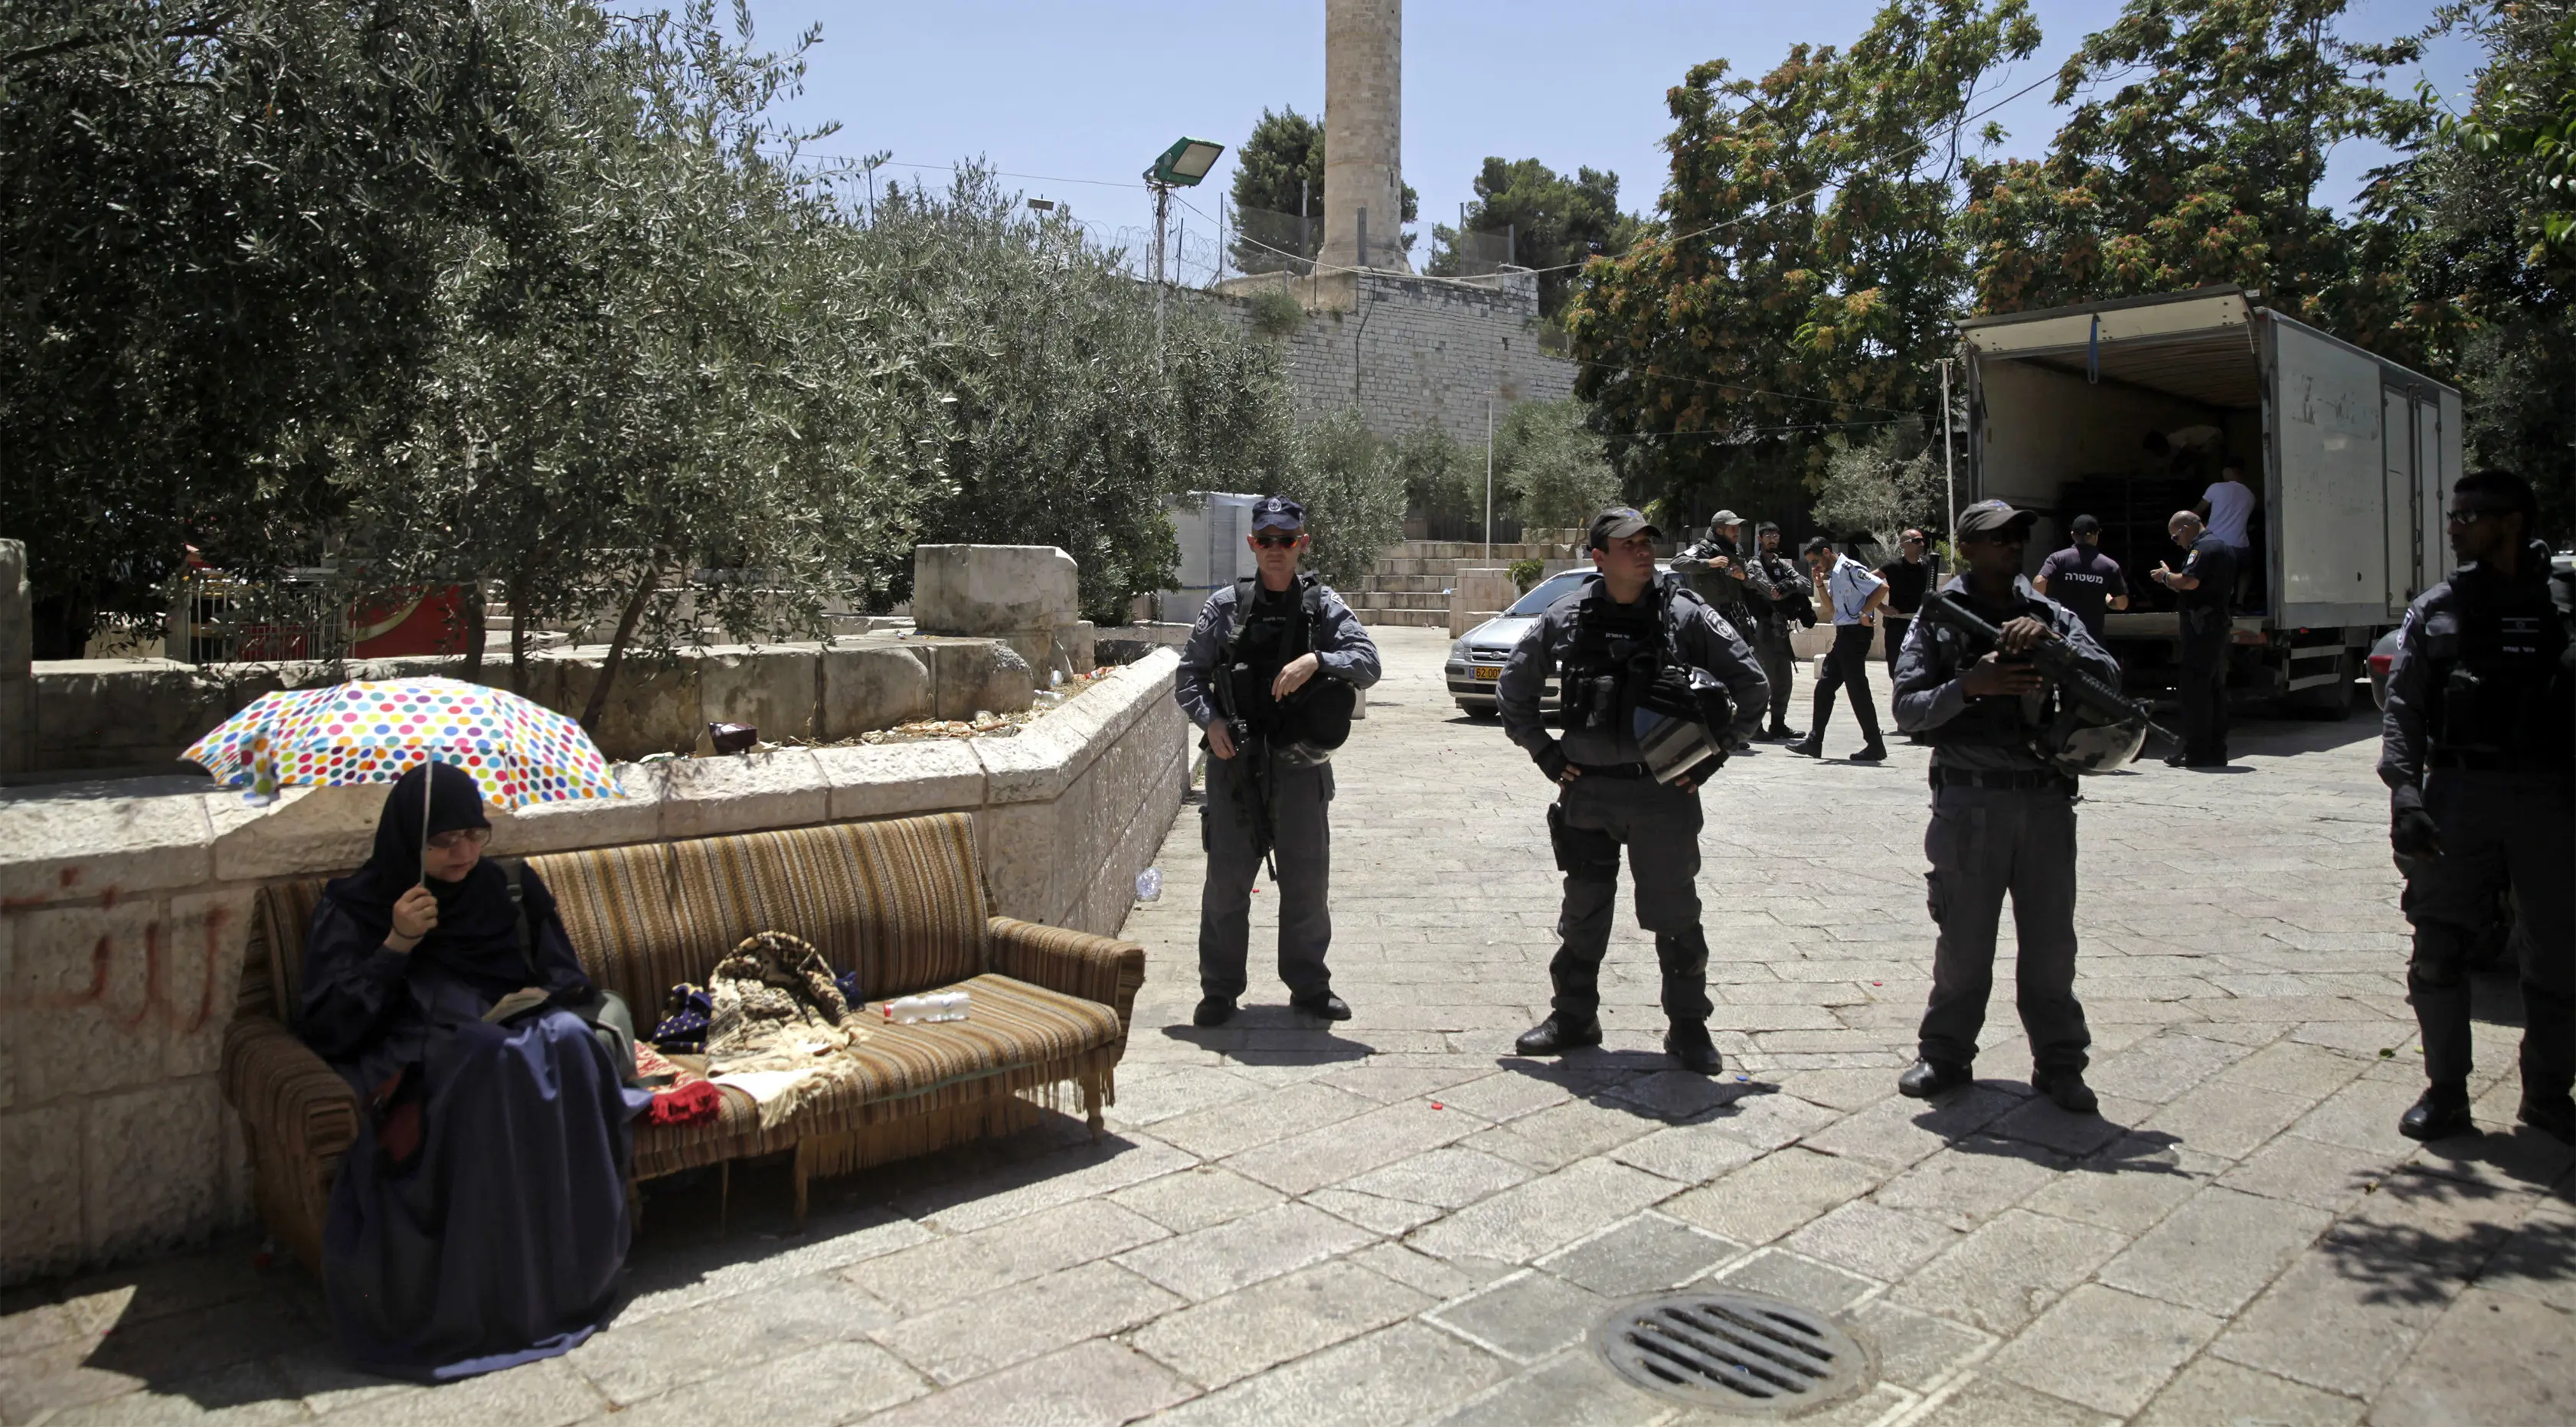 Petugas Israel melakukan penjagaan terhadap wanita muslim yang duduk di luar komplek Masjid Al- Aqsa, Yerusalem, Minggu (16/7). Setelah pekan lalu terjadi kerusuhan antara warga Arab-Israel dengan petugas kepolisian Israel. (AP/Mahmoud Illean)